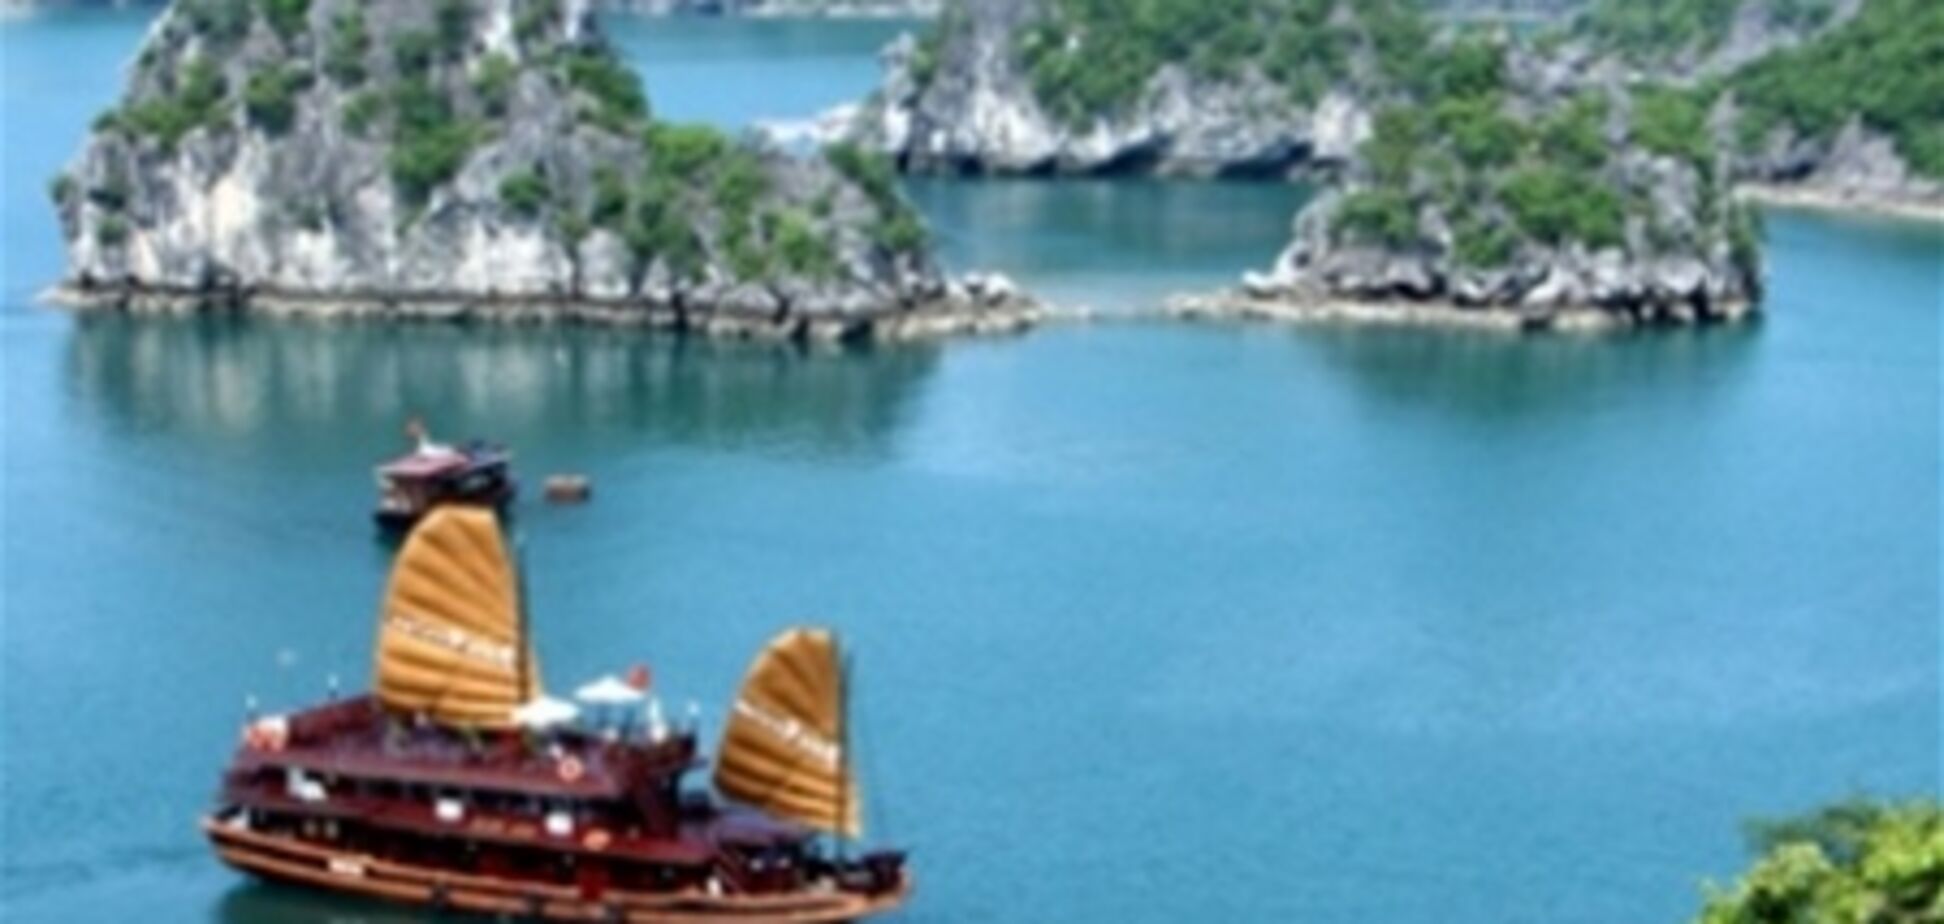 Вьетнам рассчитывает на 10 млрд. долларов дохода от туризма и предлагает льготы местному турбизнесу